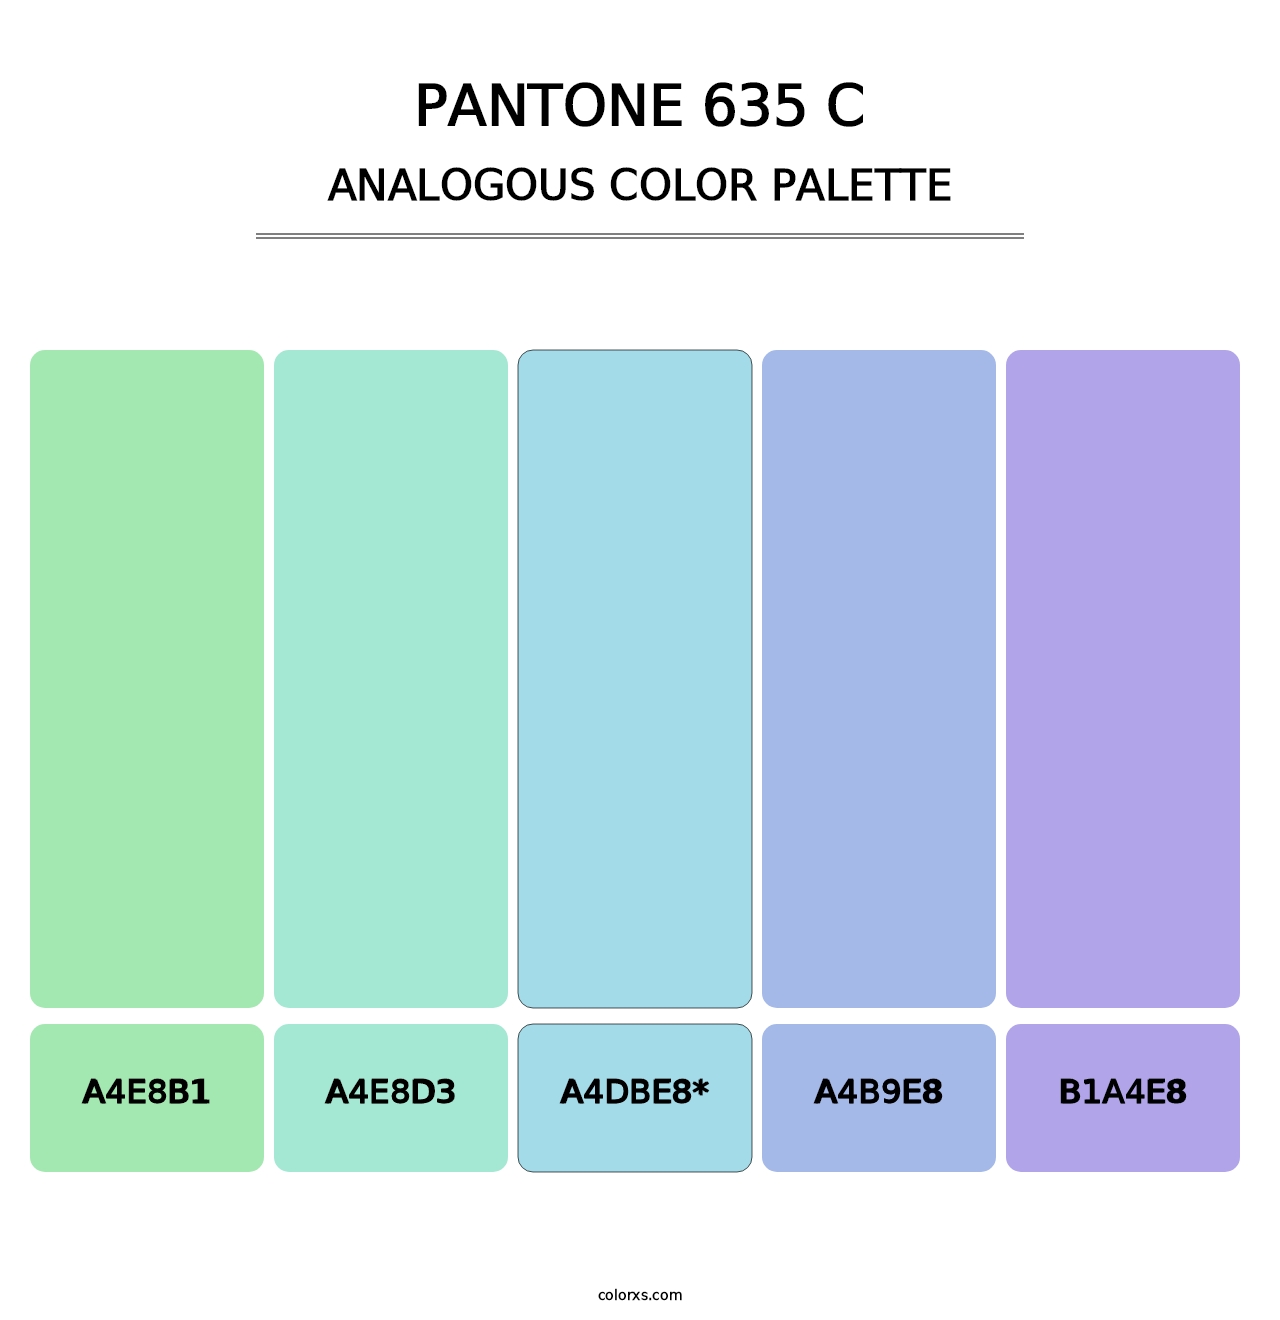 PANTONE 635 C - Analogous Color Palette